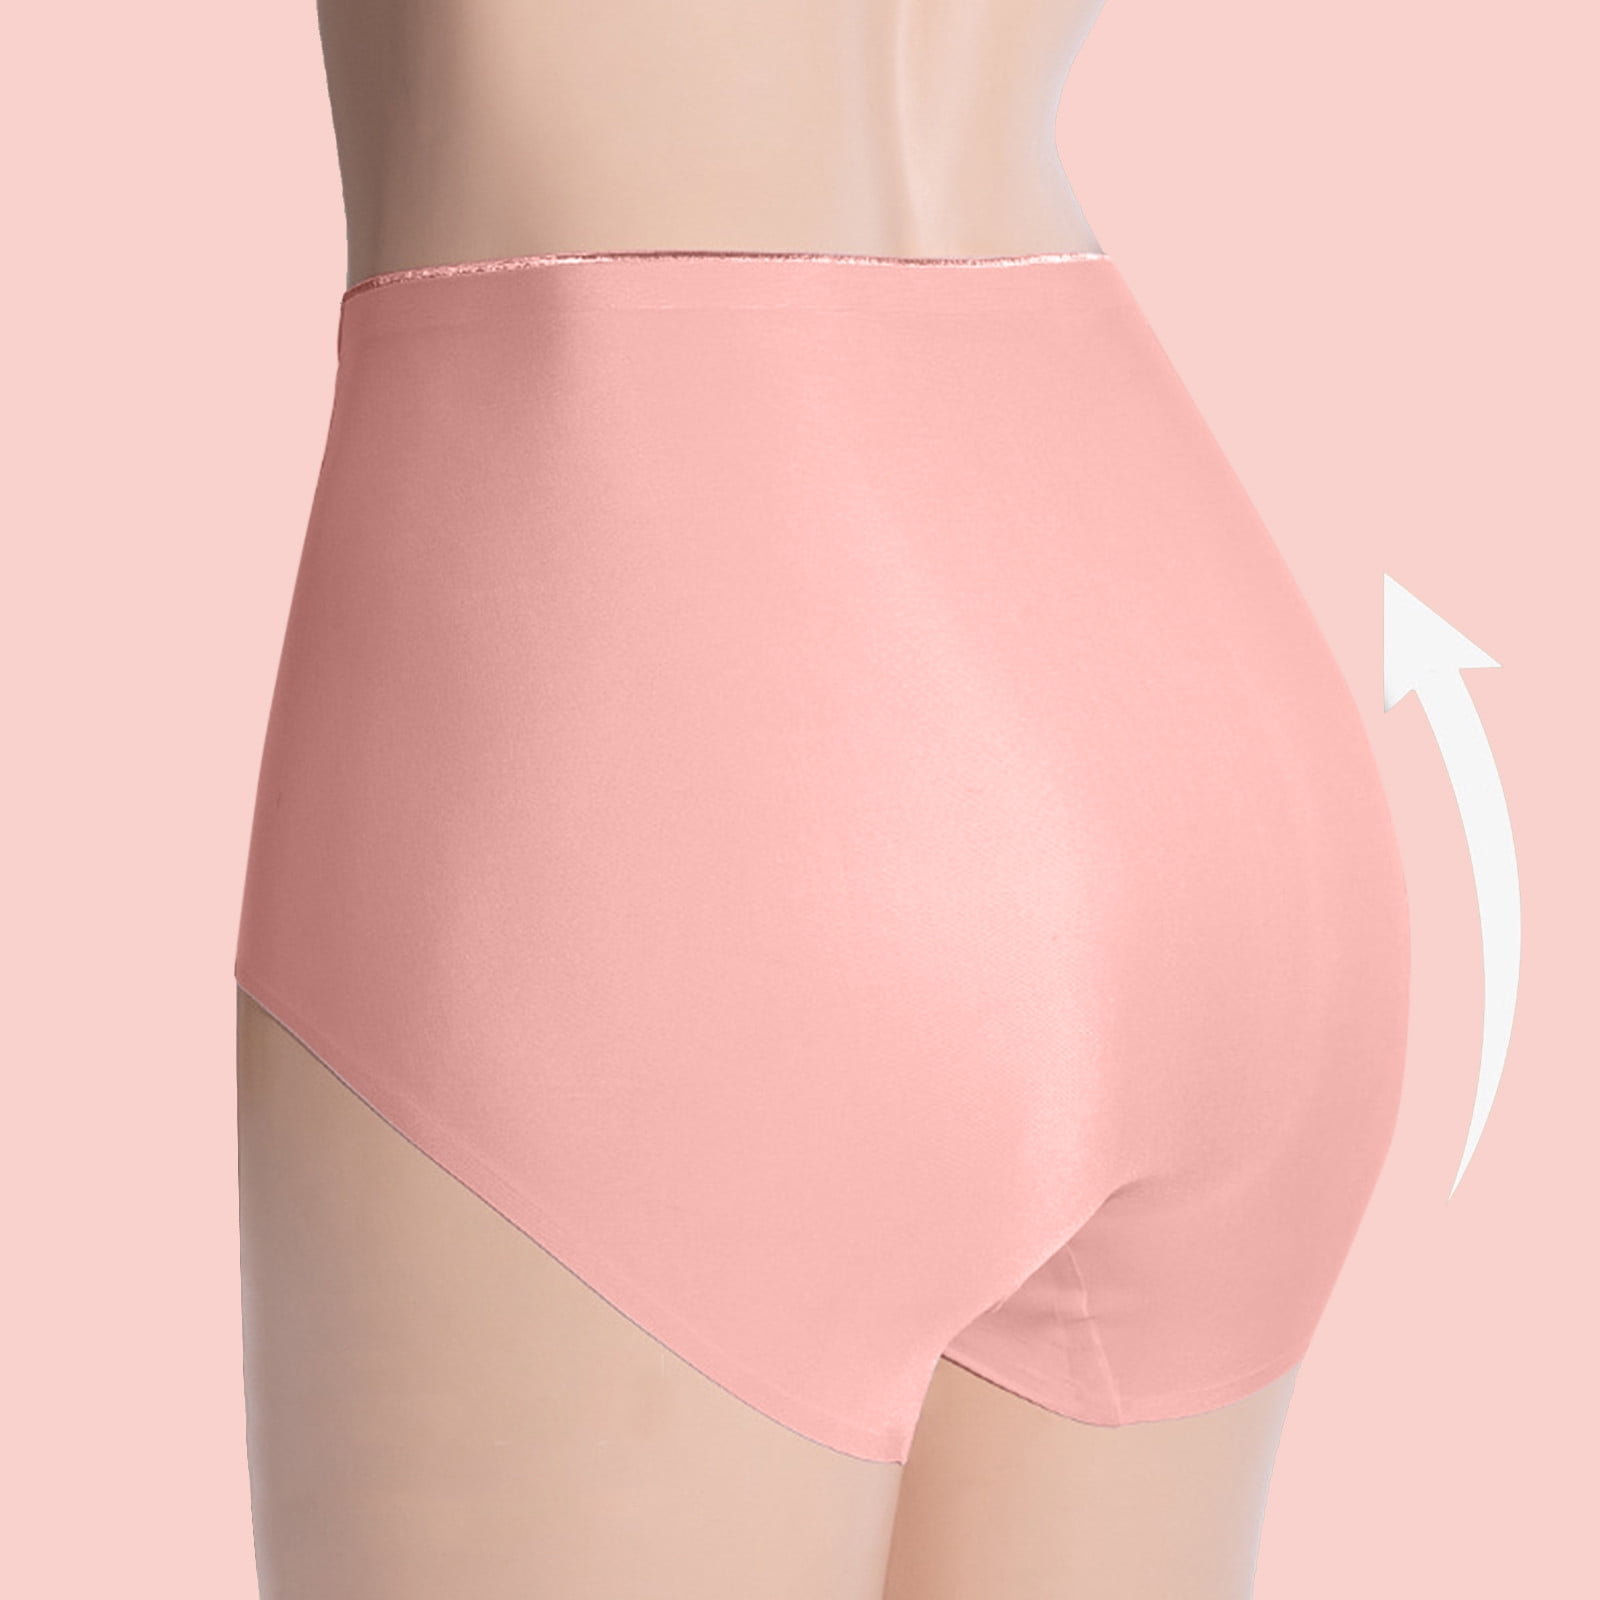 eczipvz Cotton Underwear for Women Women Seamless V Shaped Belly Support  Briefs During Pregnancy Breathable Low Waist Underwear Beige,XL 